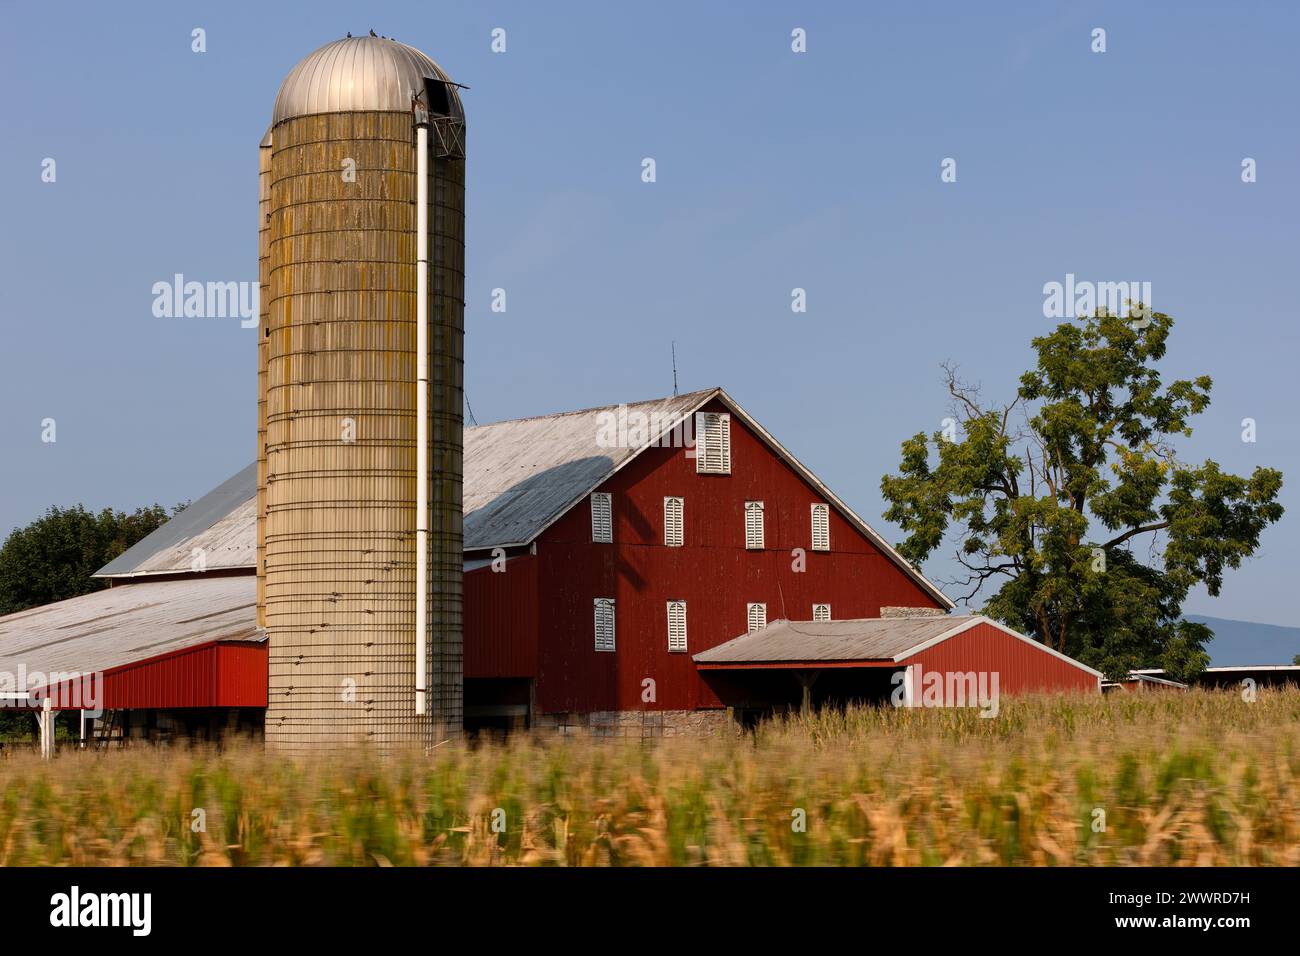 Un paisaje rural con granero rojo y silo con un campo de maíz en primer plano disparado desde un coche en movimiento. Foto de stock